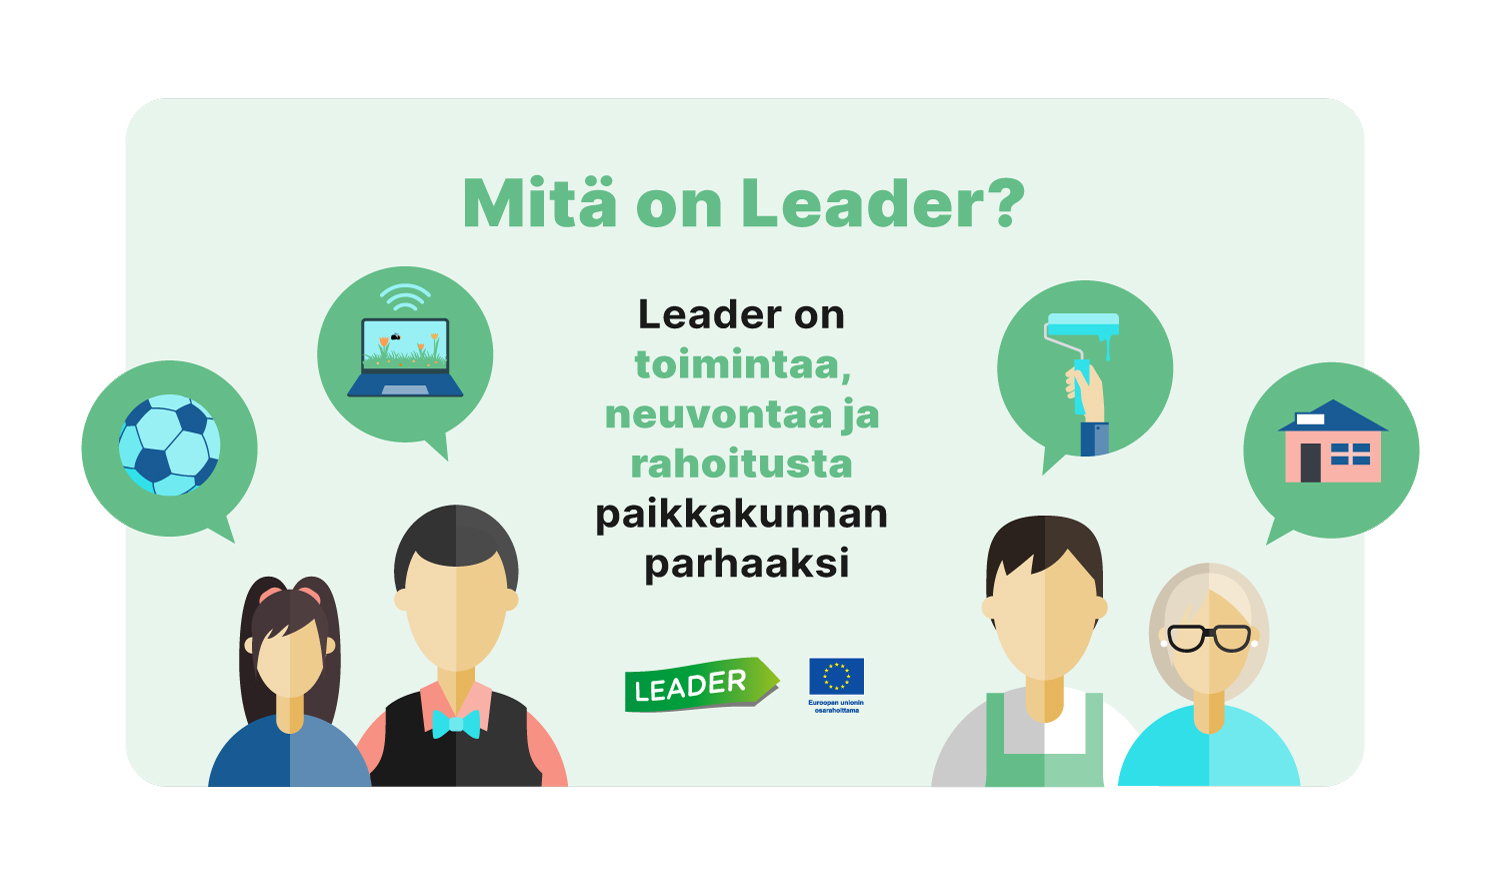 Mitä on Leader? Leader on toimintaa, neuvontaa ja rahoitusta paikkakunnan parhaaksi. Piirroskuva.